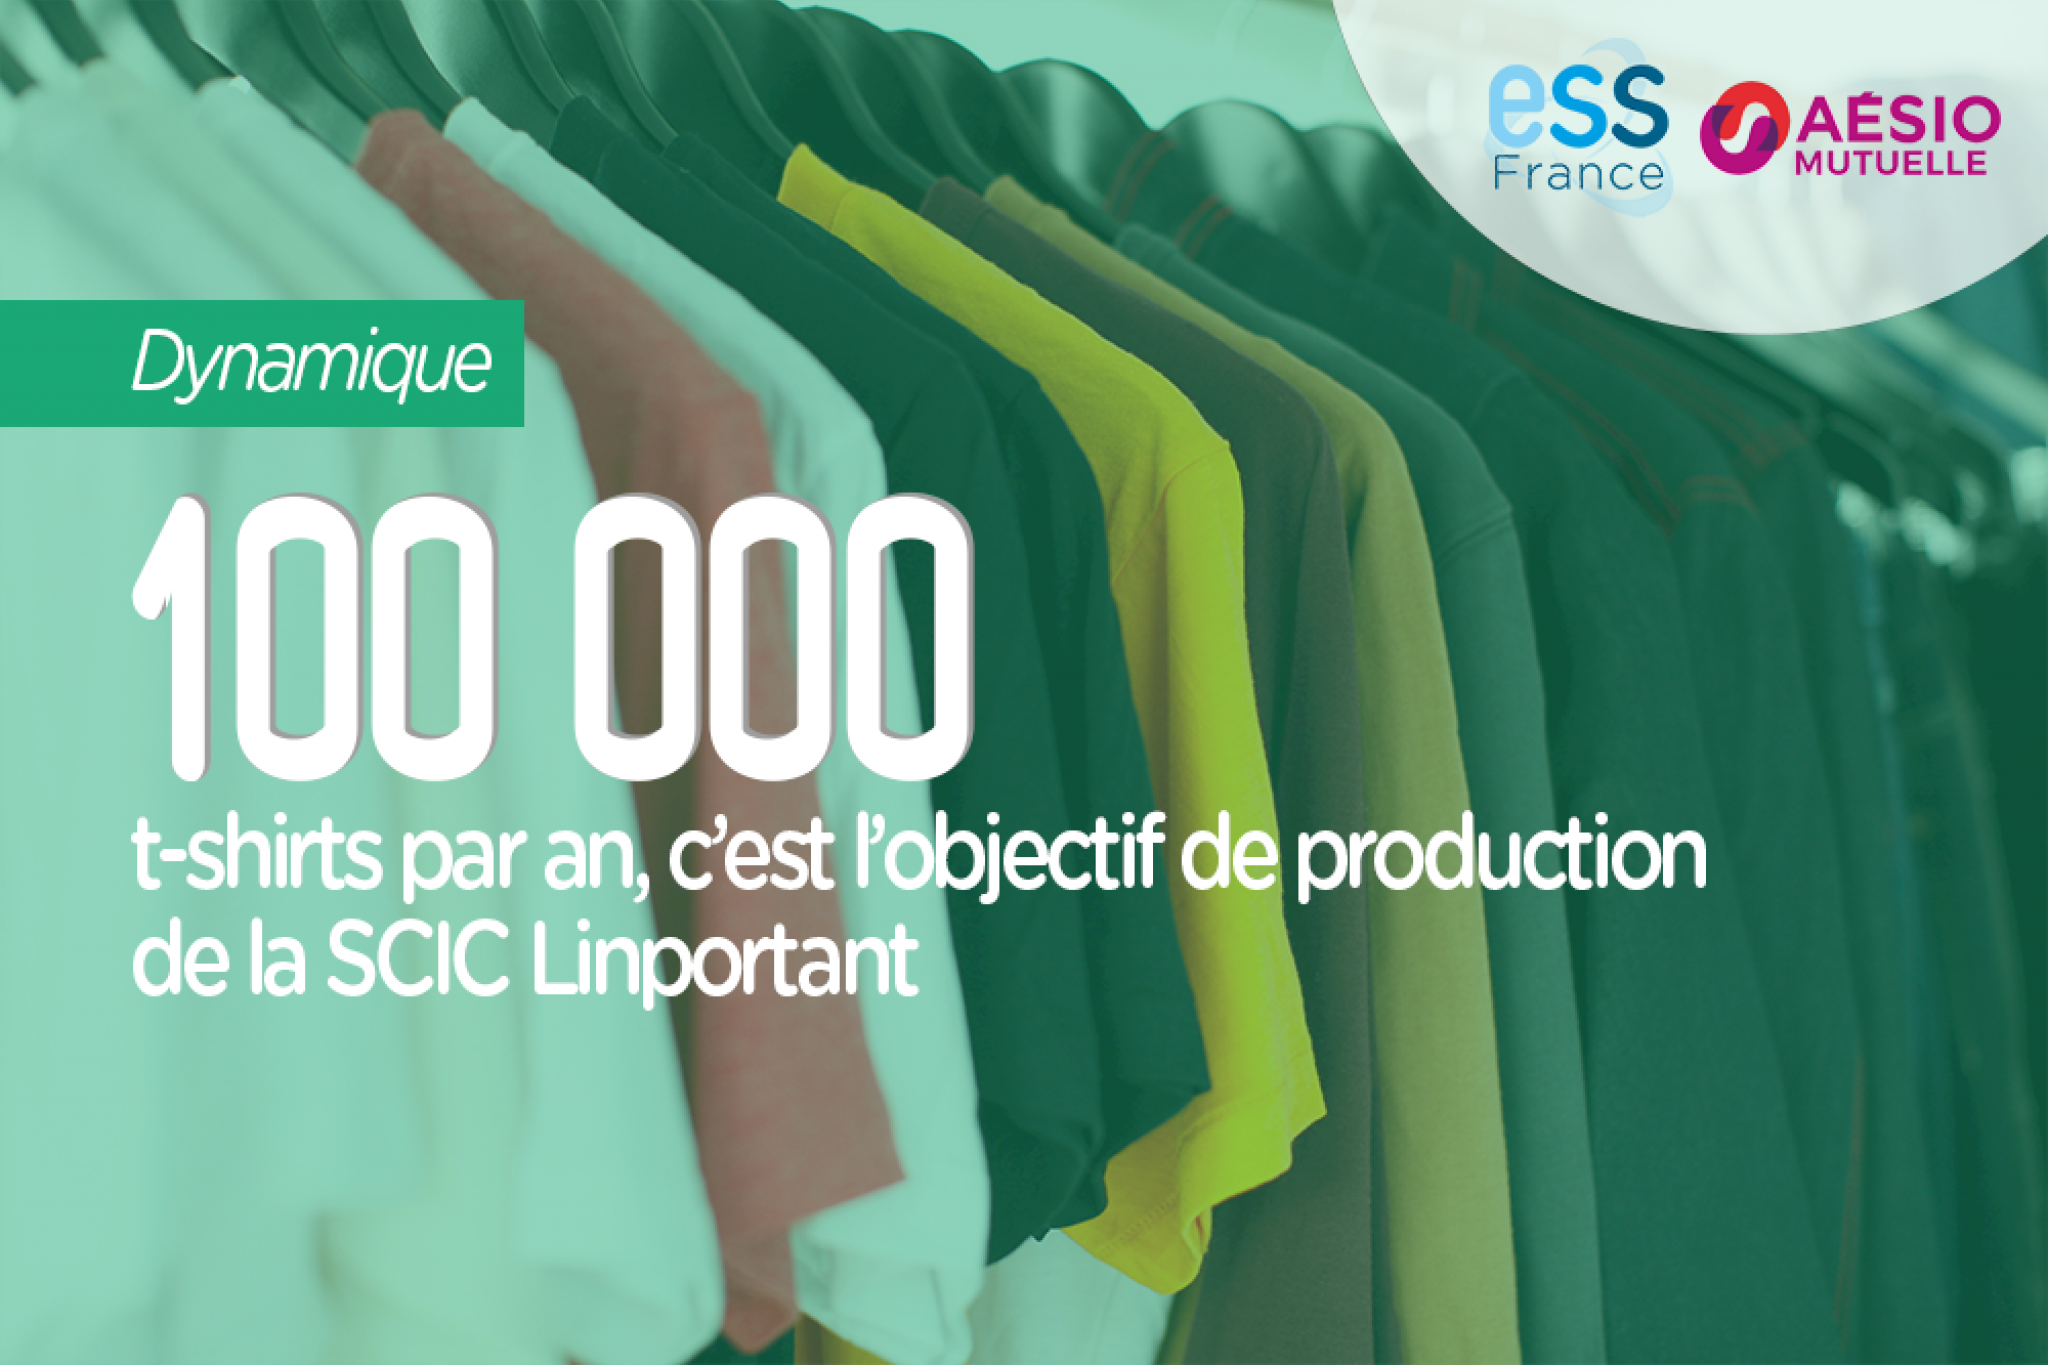 100 000 t-shirts par an, c'est l'objectif de production de la SCIC Linportant